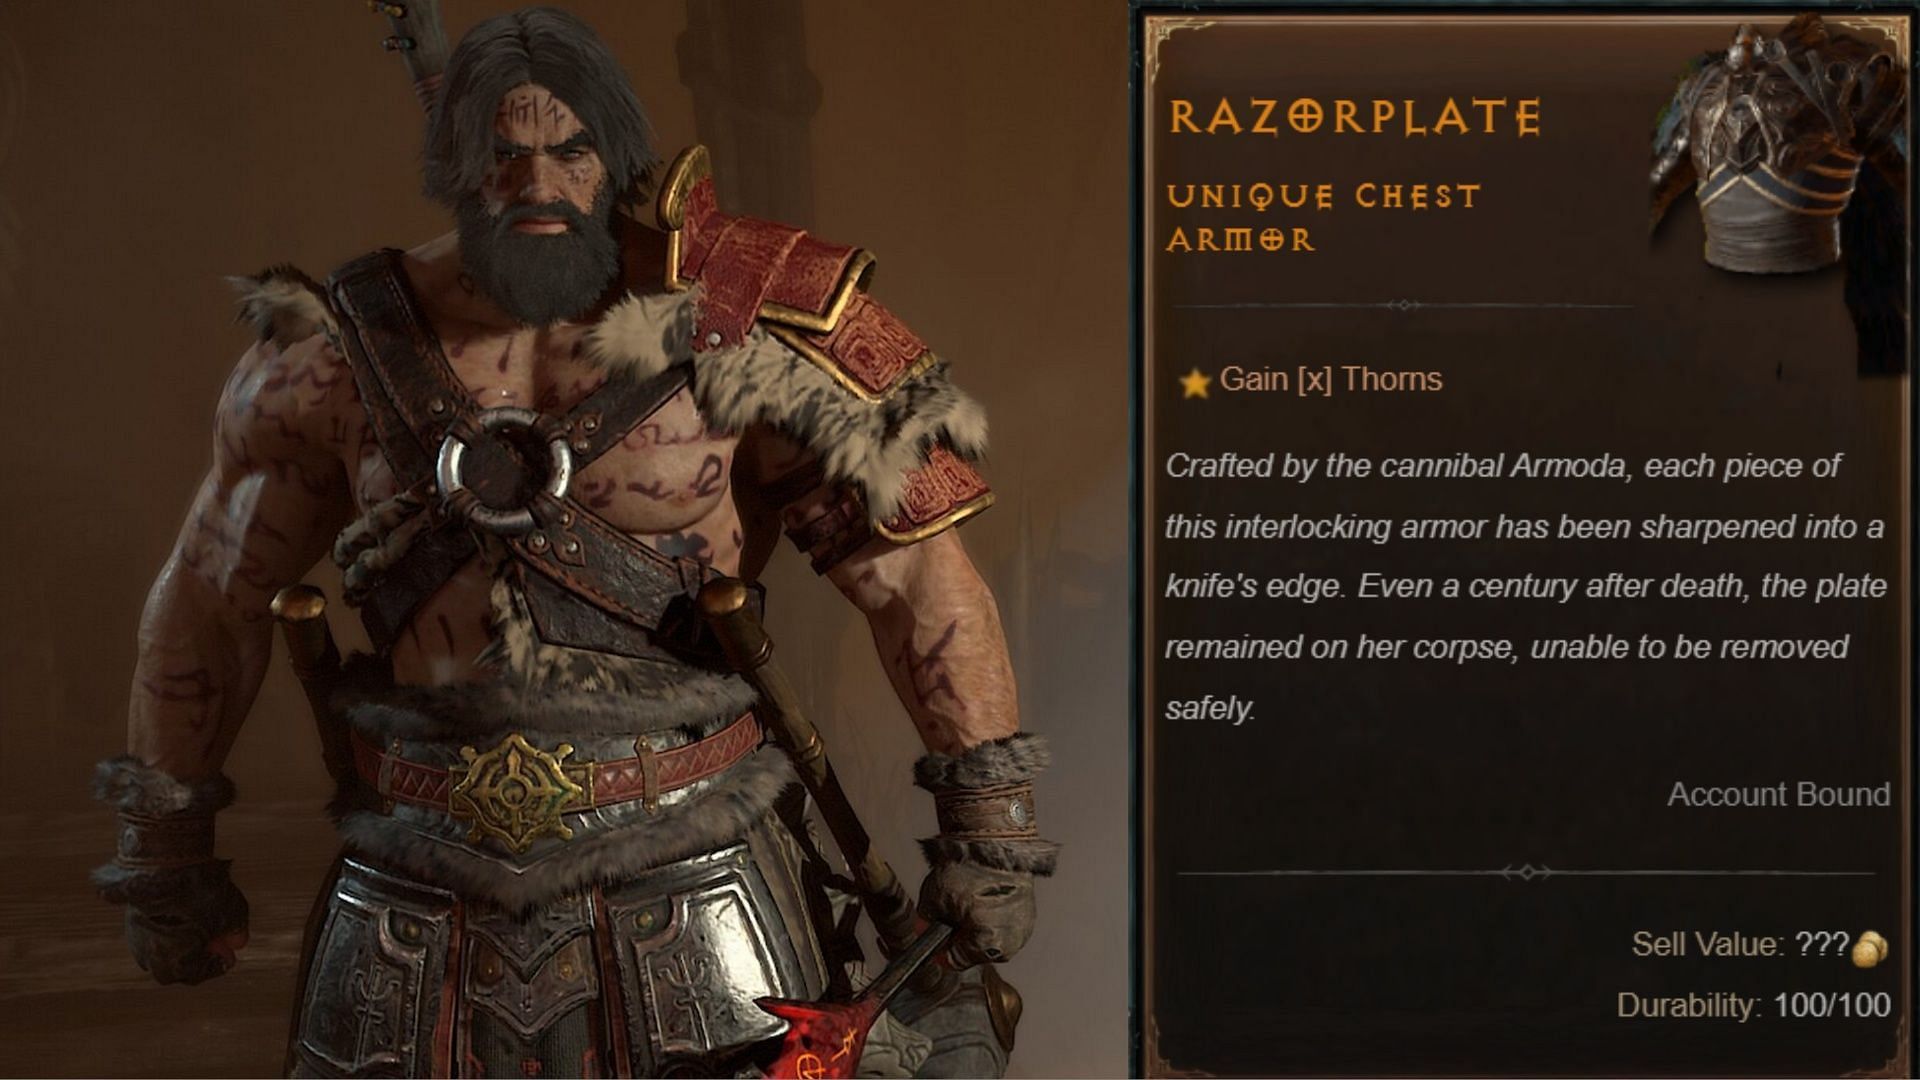 The Barbarian in Diablo 4 and Razorplate description on the right.